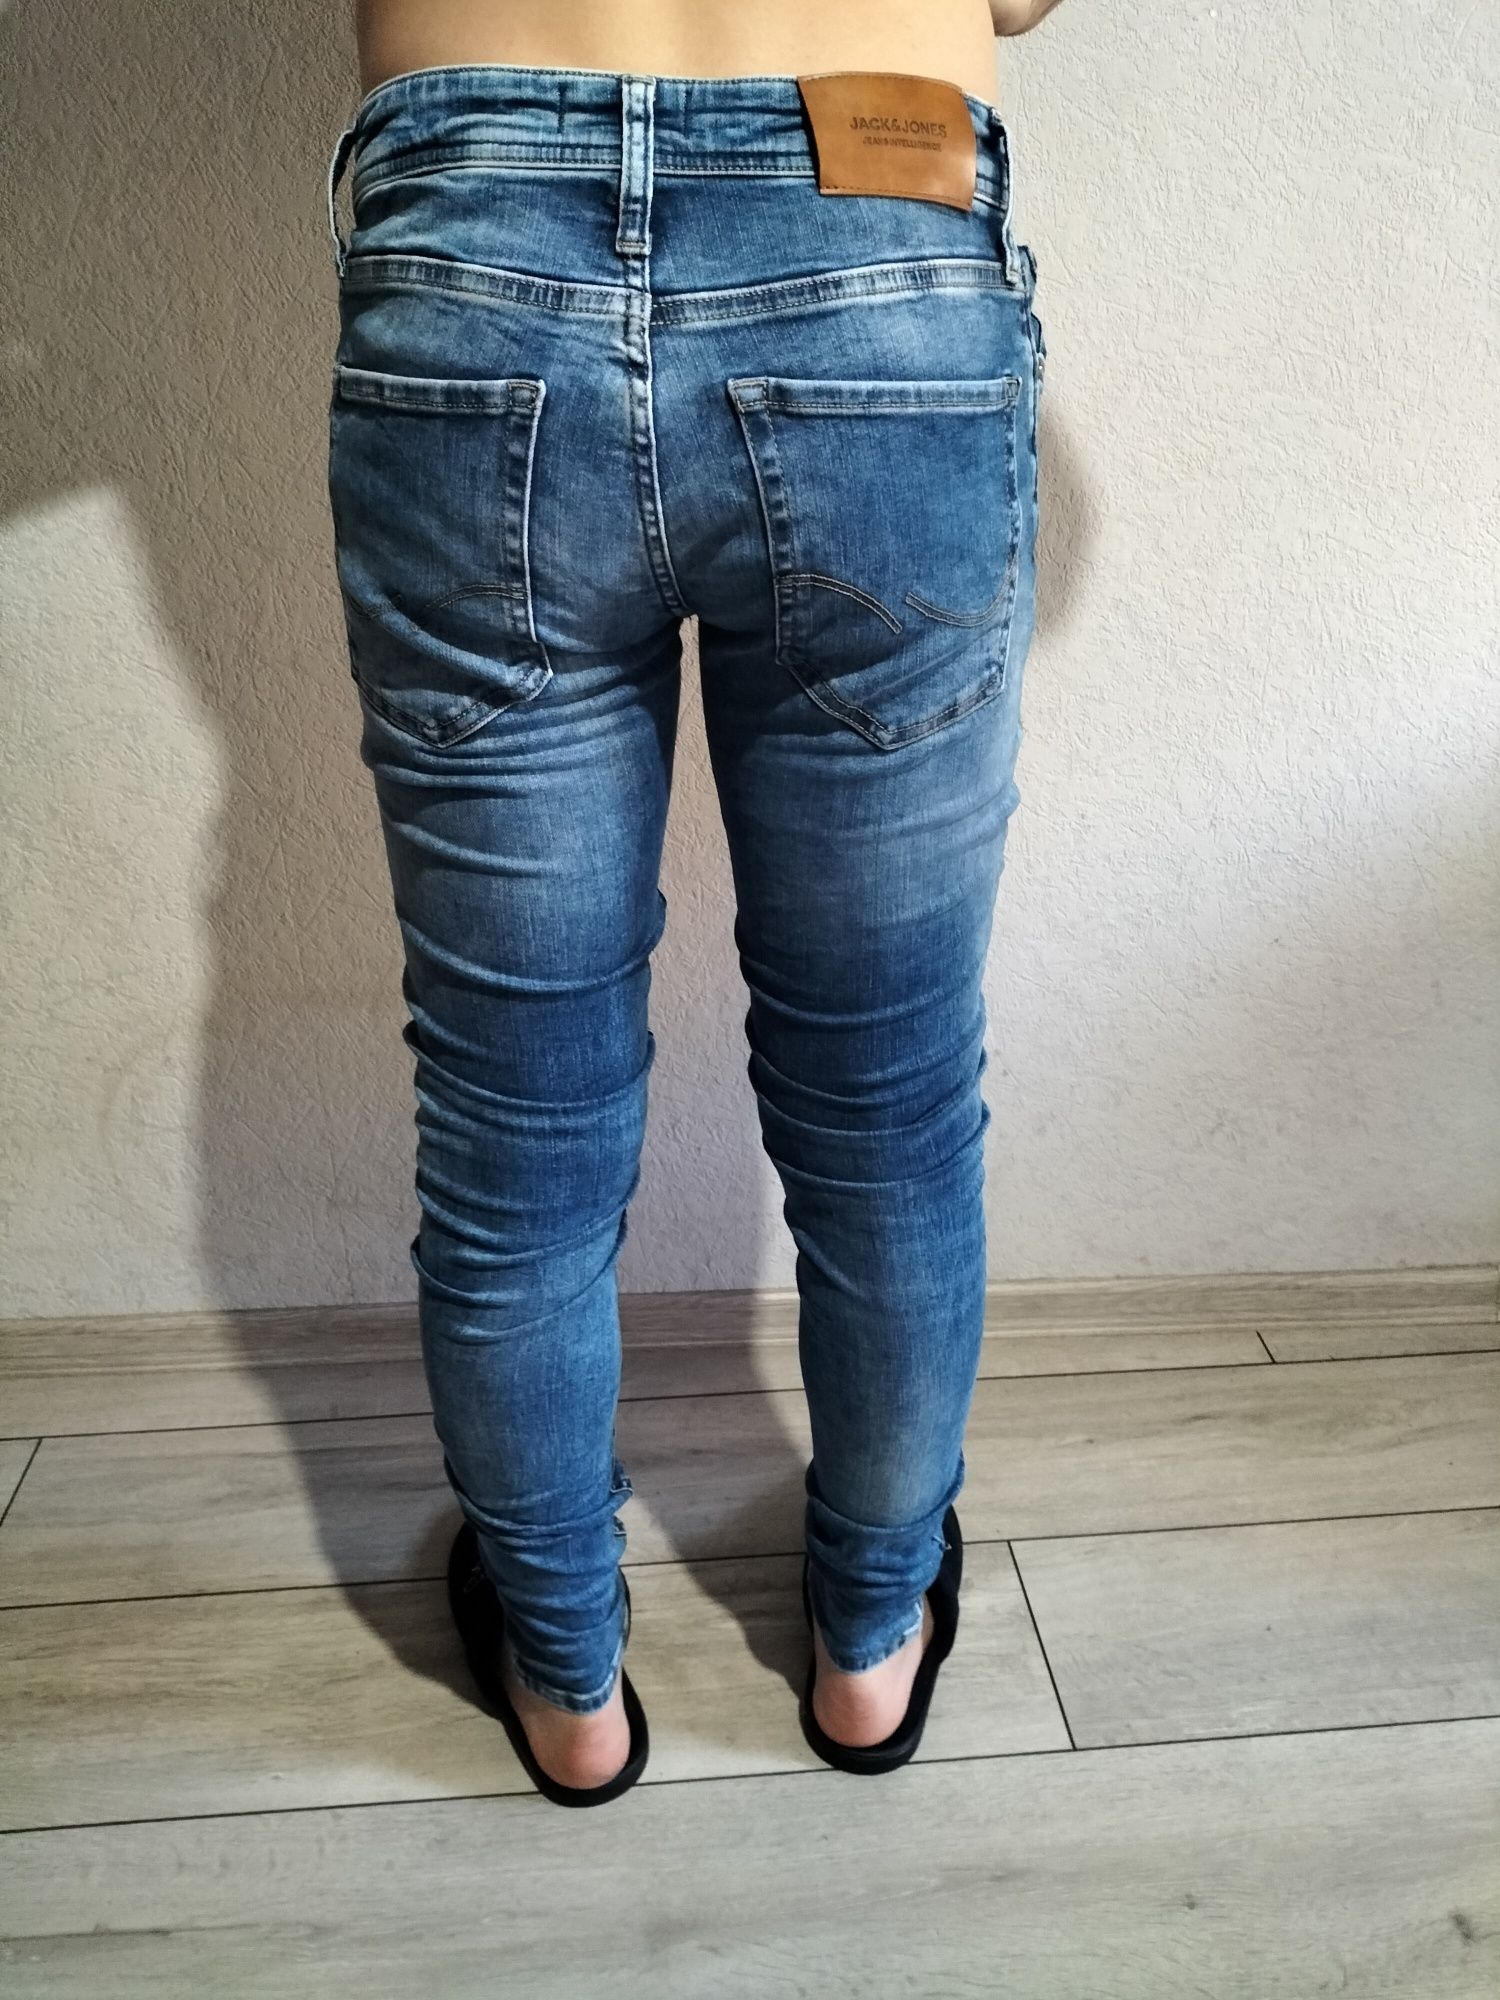 Продам джинсы для подростка на рост 160-170 см